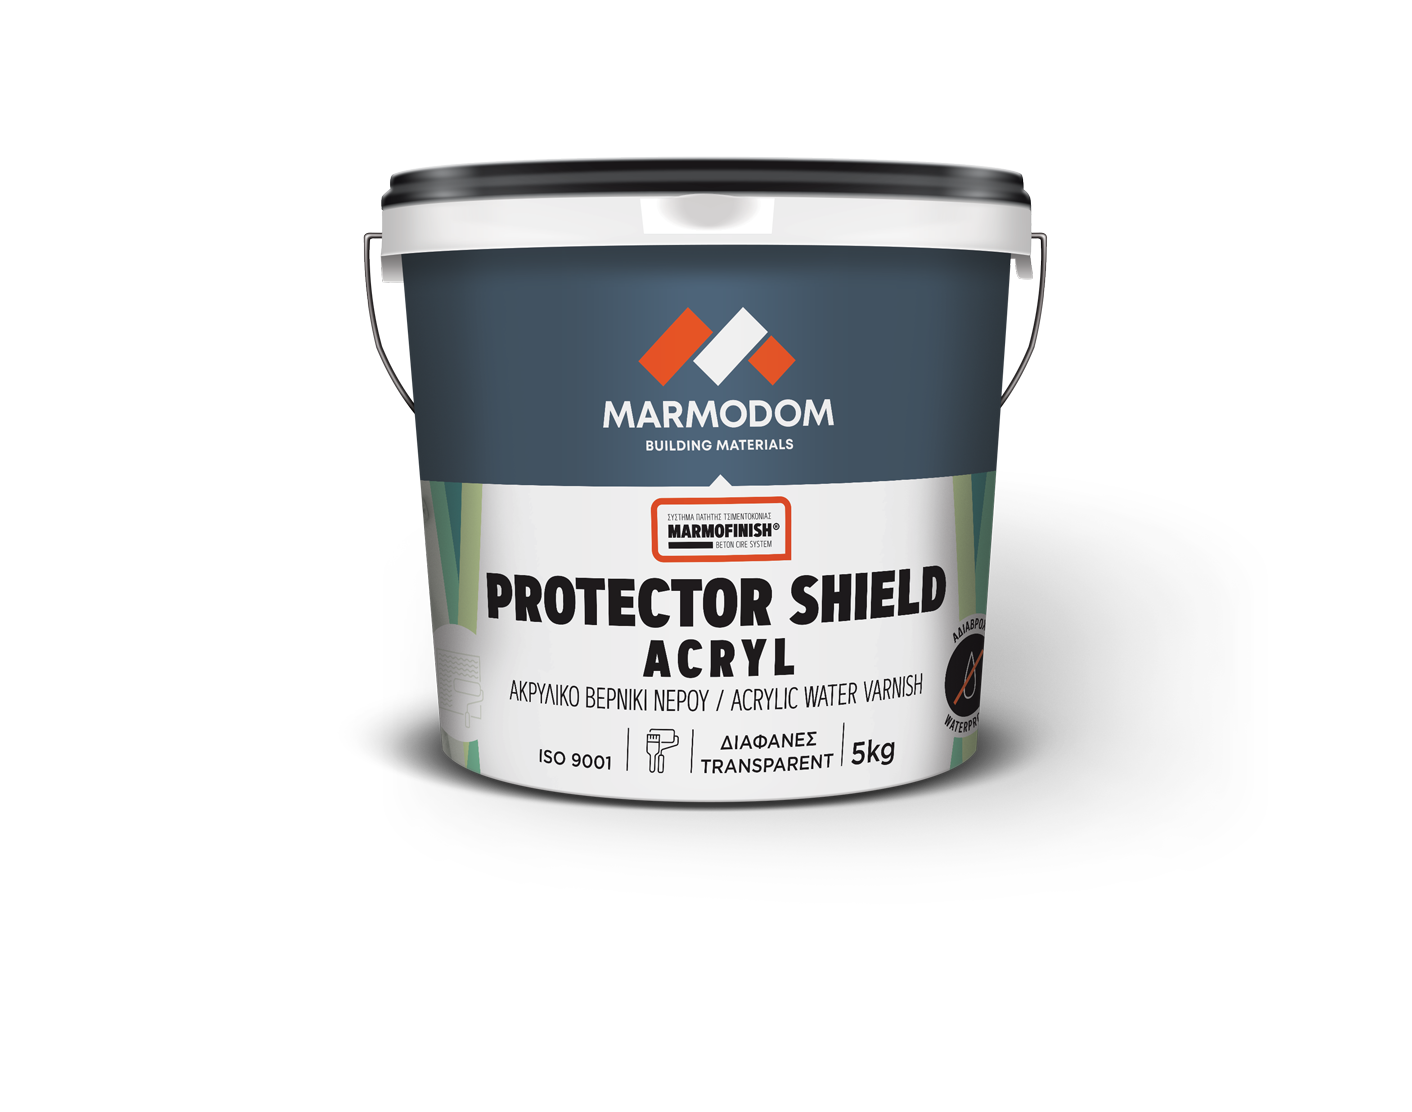 Marmodom PROTECTOR SHIELD ACRYL 5kg Προστατευτικό ακρυλικό βερνίκι νερού